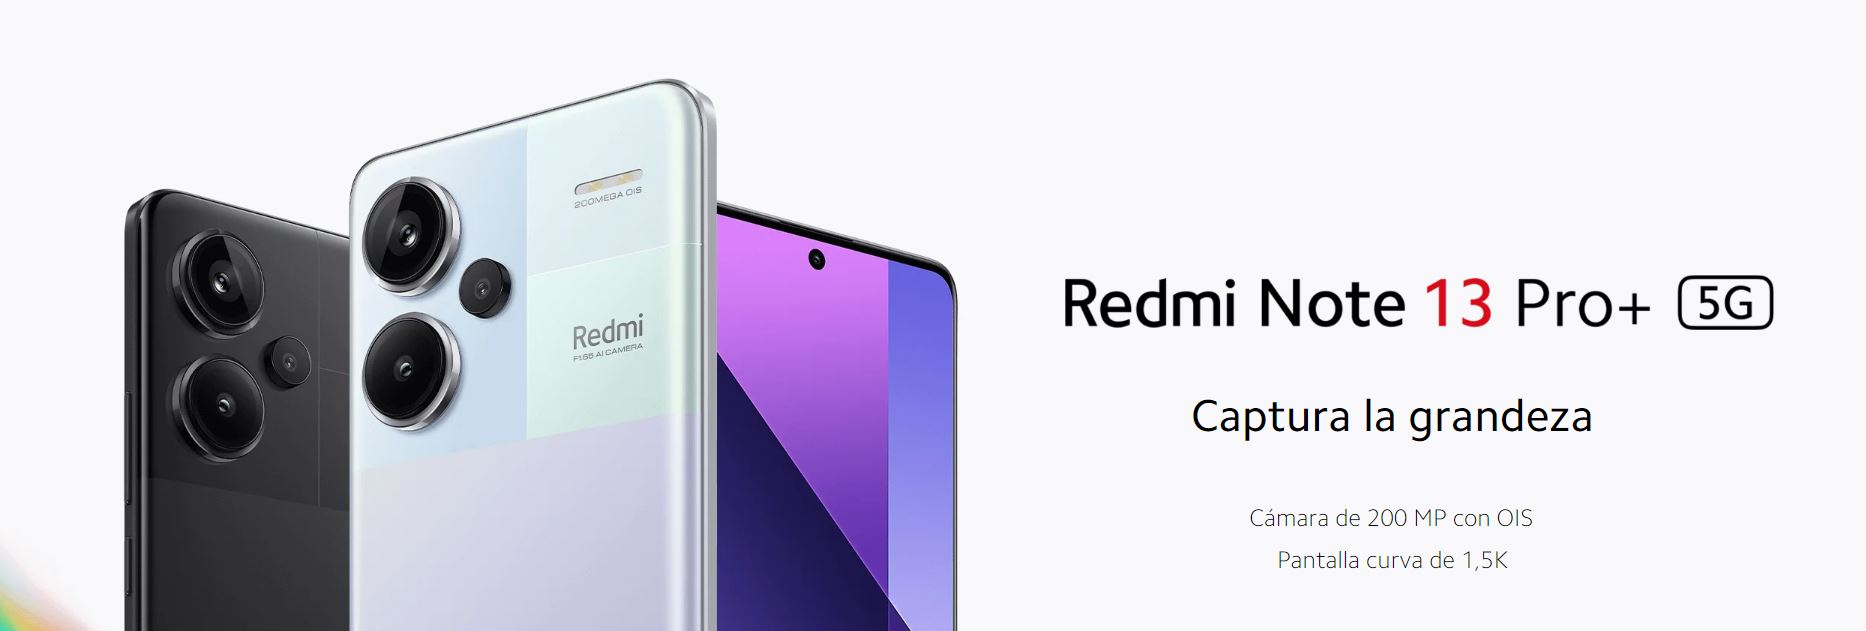  Funda compatible con Redmi Note 13 Pro Plus 5G, con